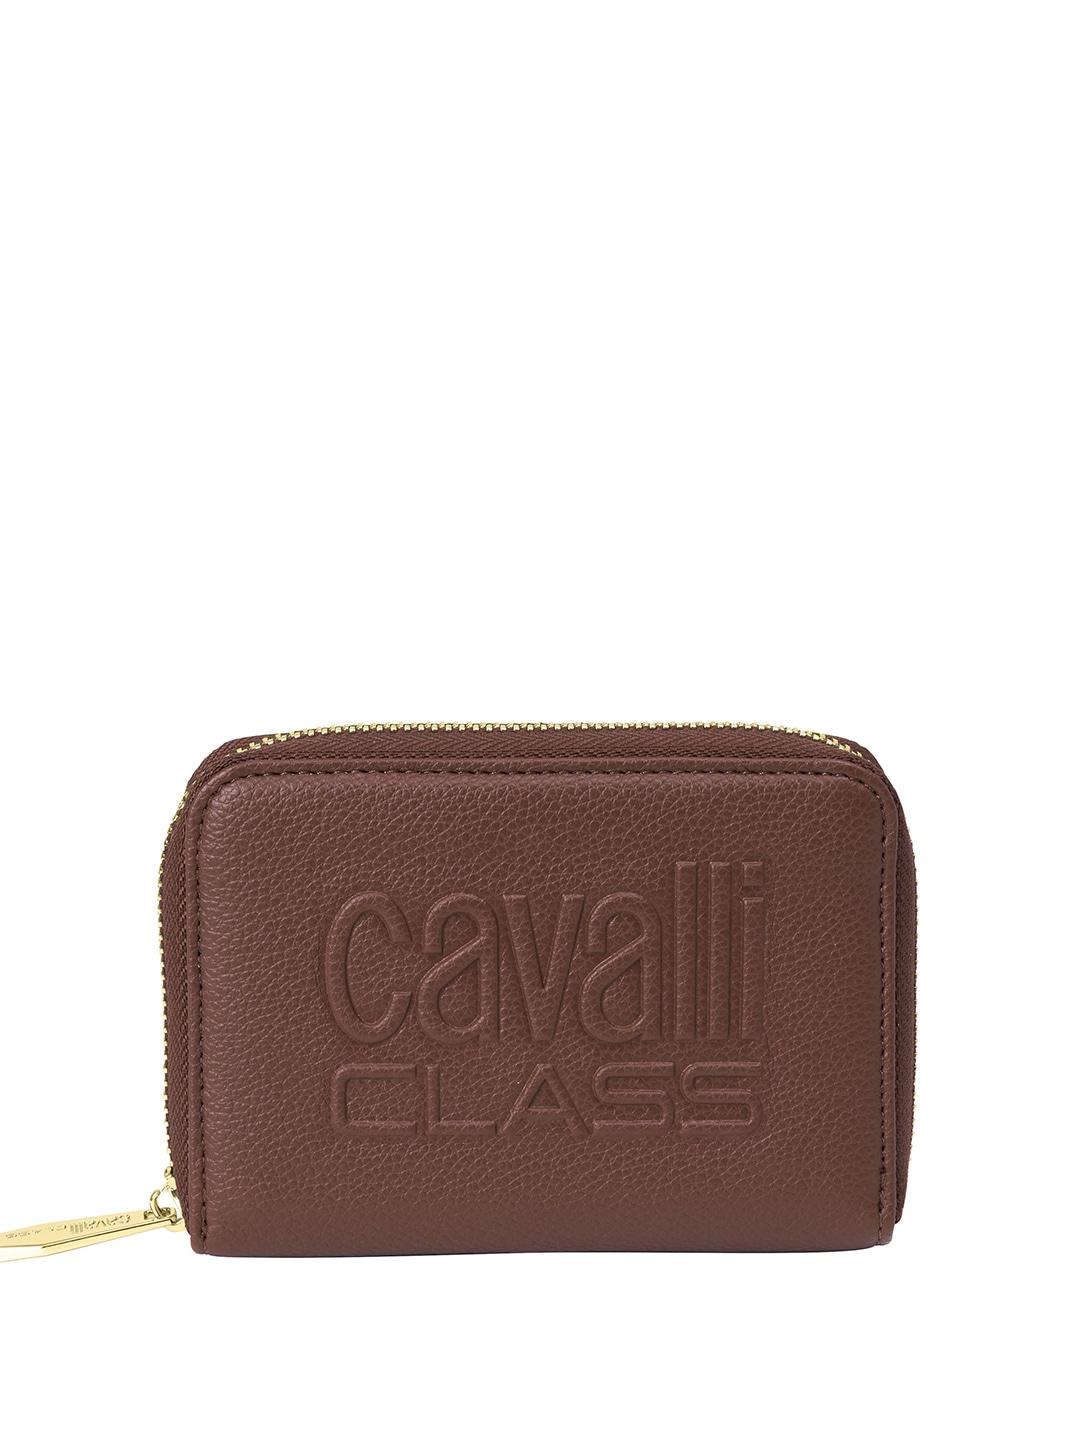 cavalli class women typography zip around wallet